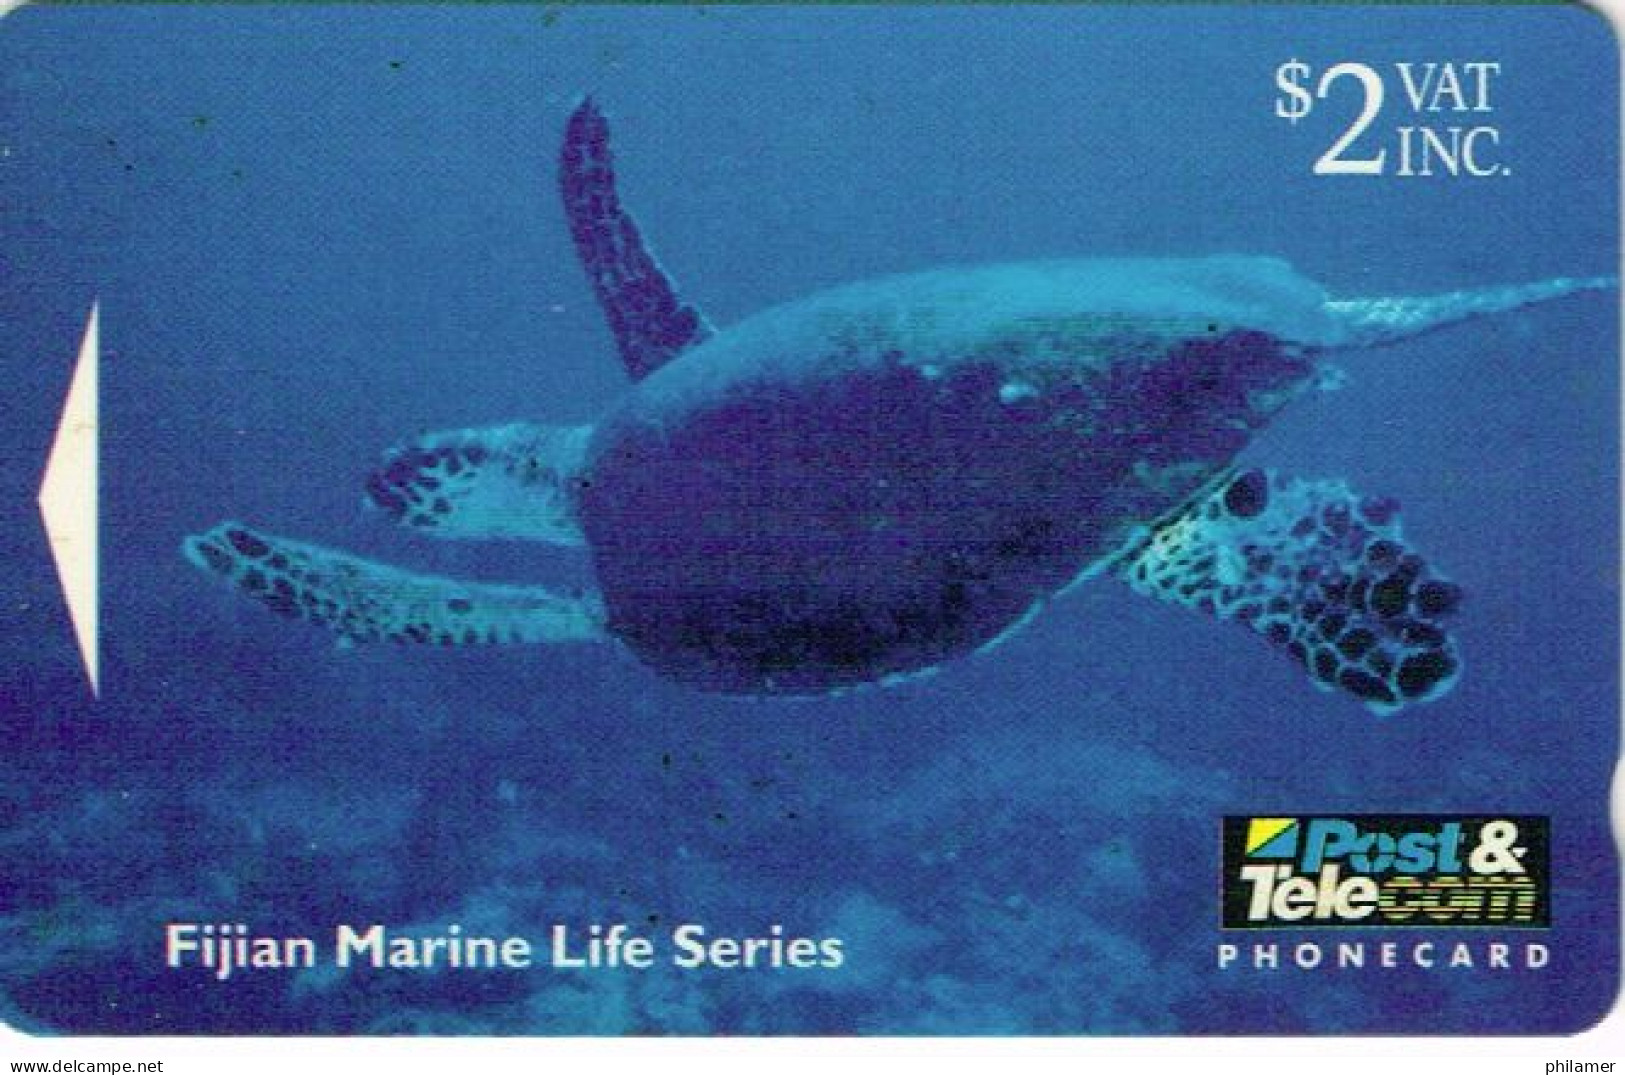 Fidji Fiji TELECARTE PHONECARD Telecom Marine Serie Tortue Turtle Hawkesbill Recif Reef 1995 2 Dollars Ut BE - Fiji